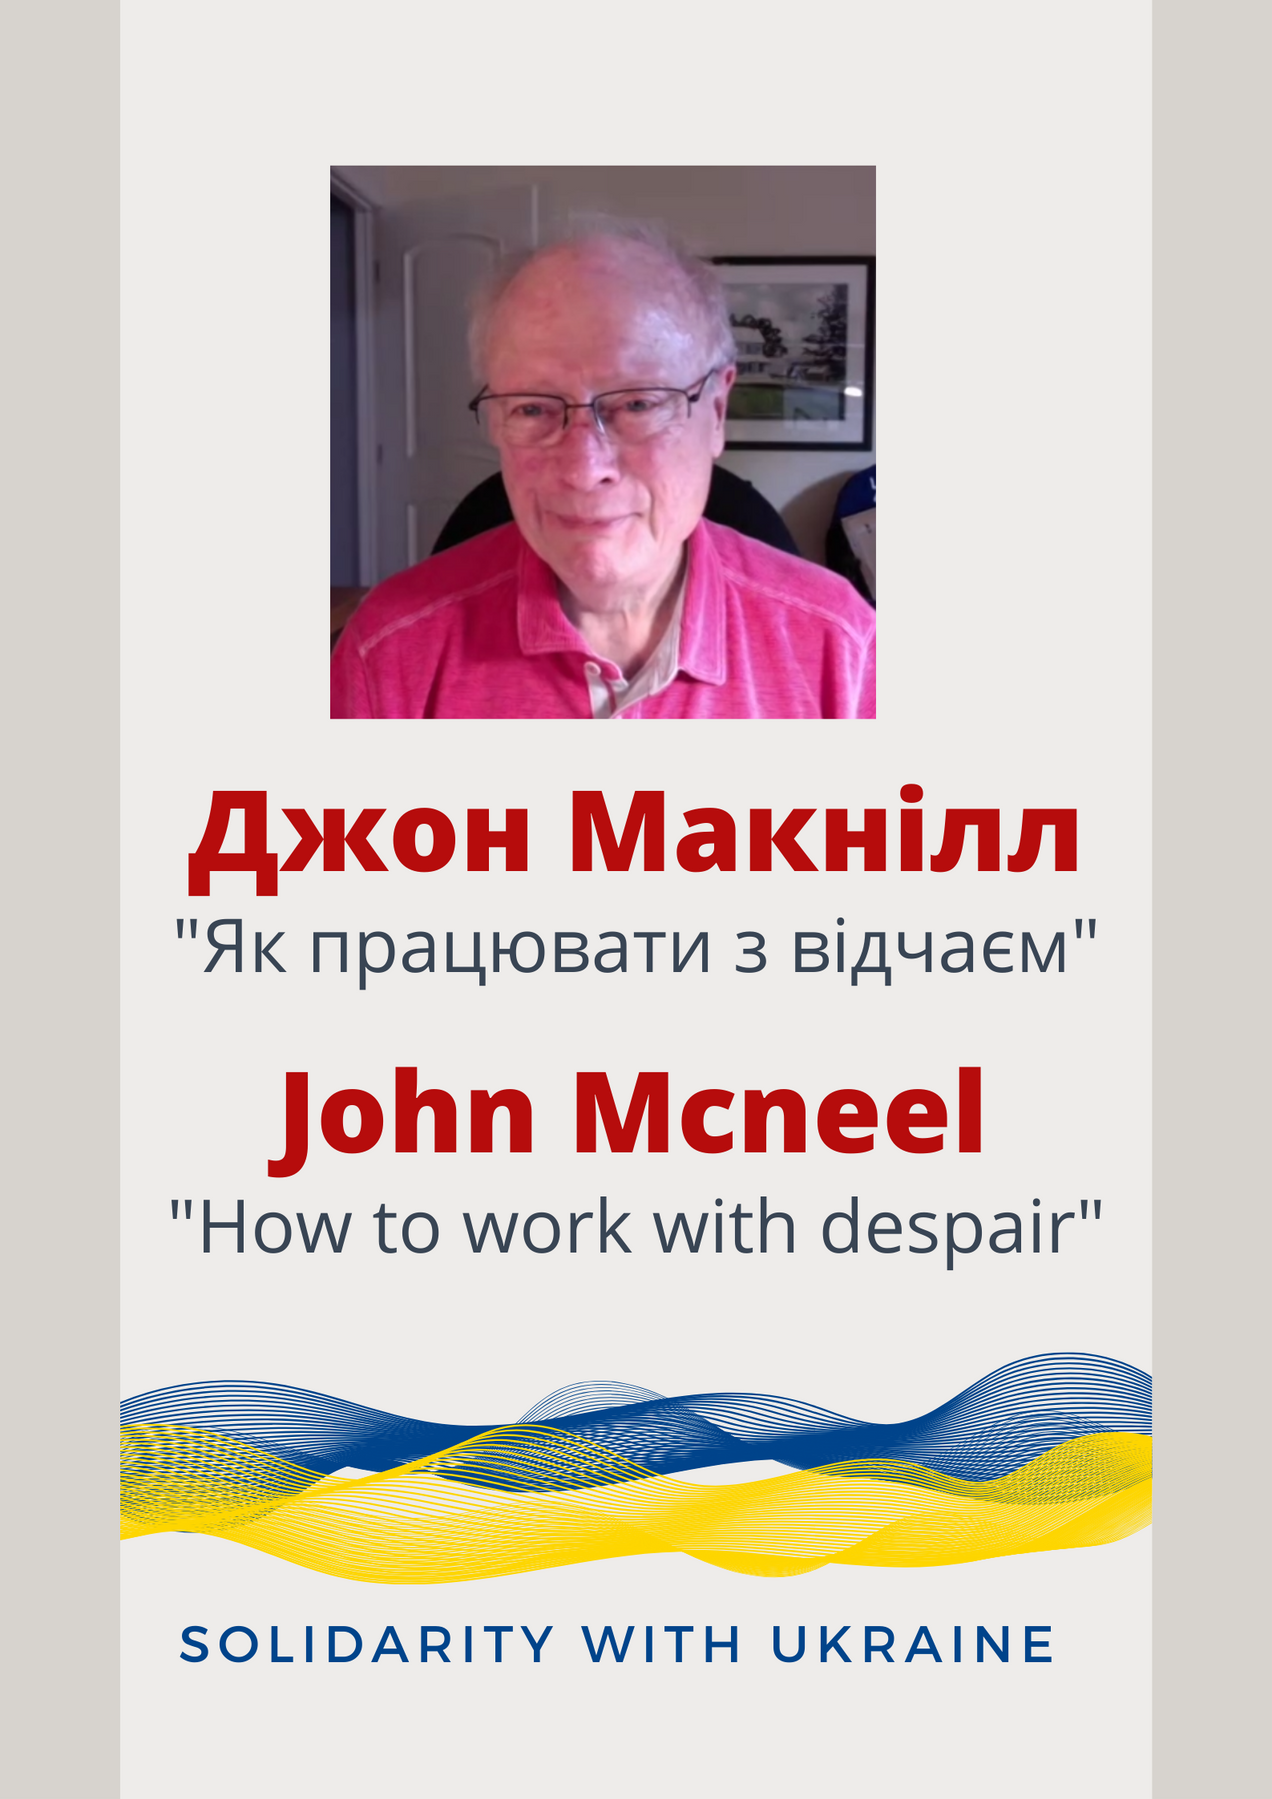 Зустріч з Джоном МакНілом (США) в підтримку українських колег.  "Як працювати з відчаєм"